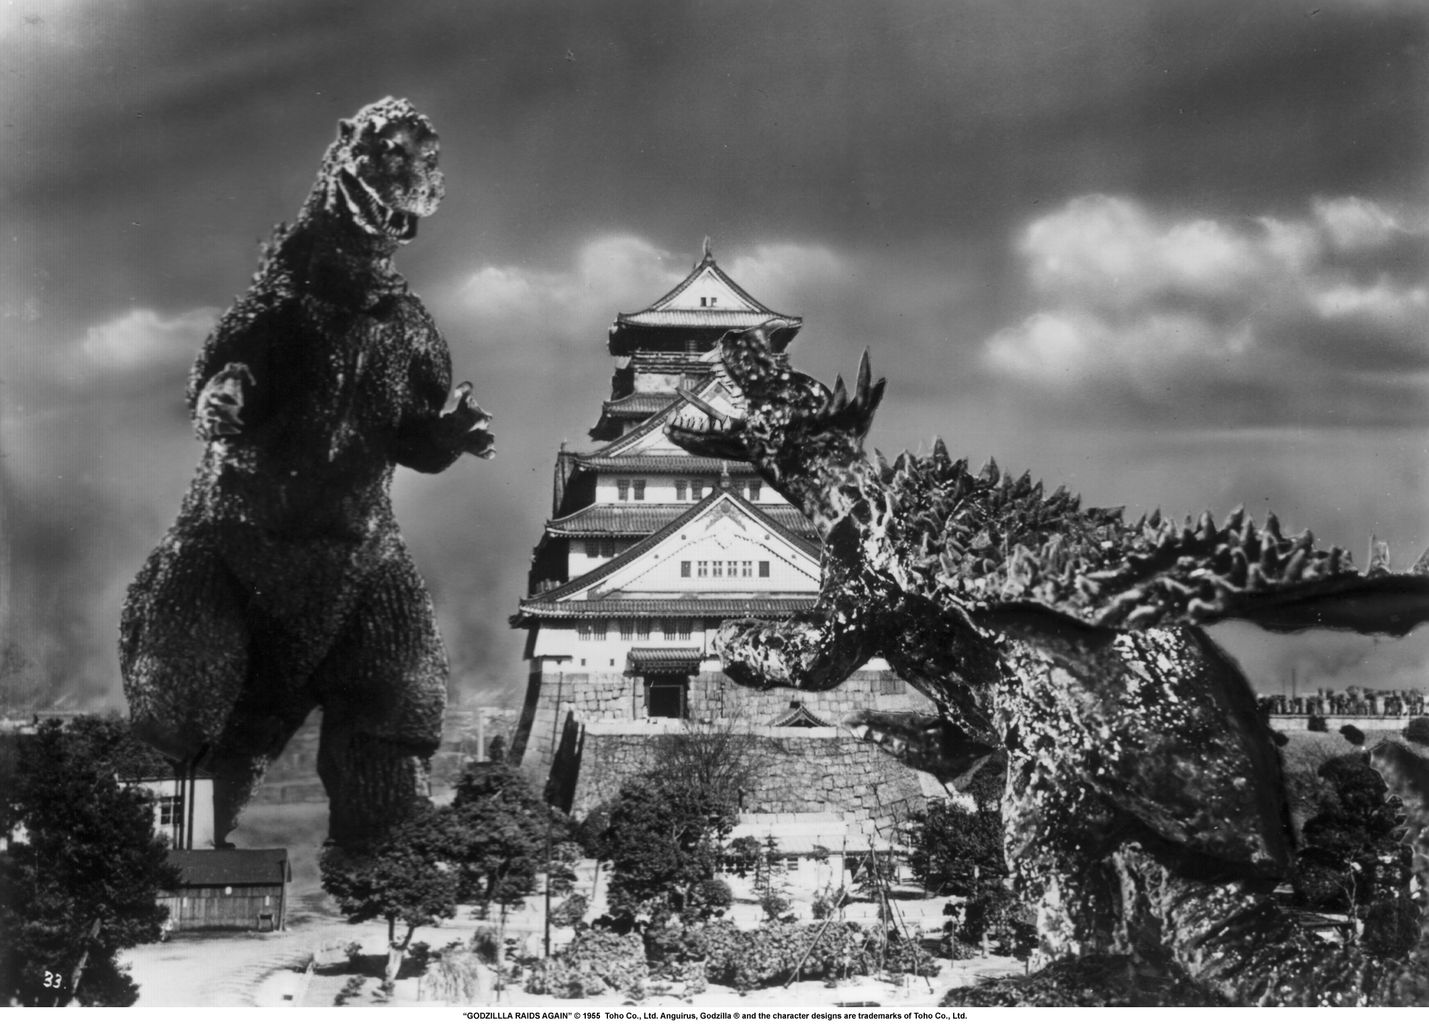 Godzilla Raids Again Backgrounds, Compatible - PC, Mobile, Gadgets| 1429x1024 px